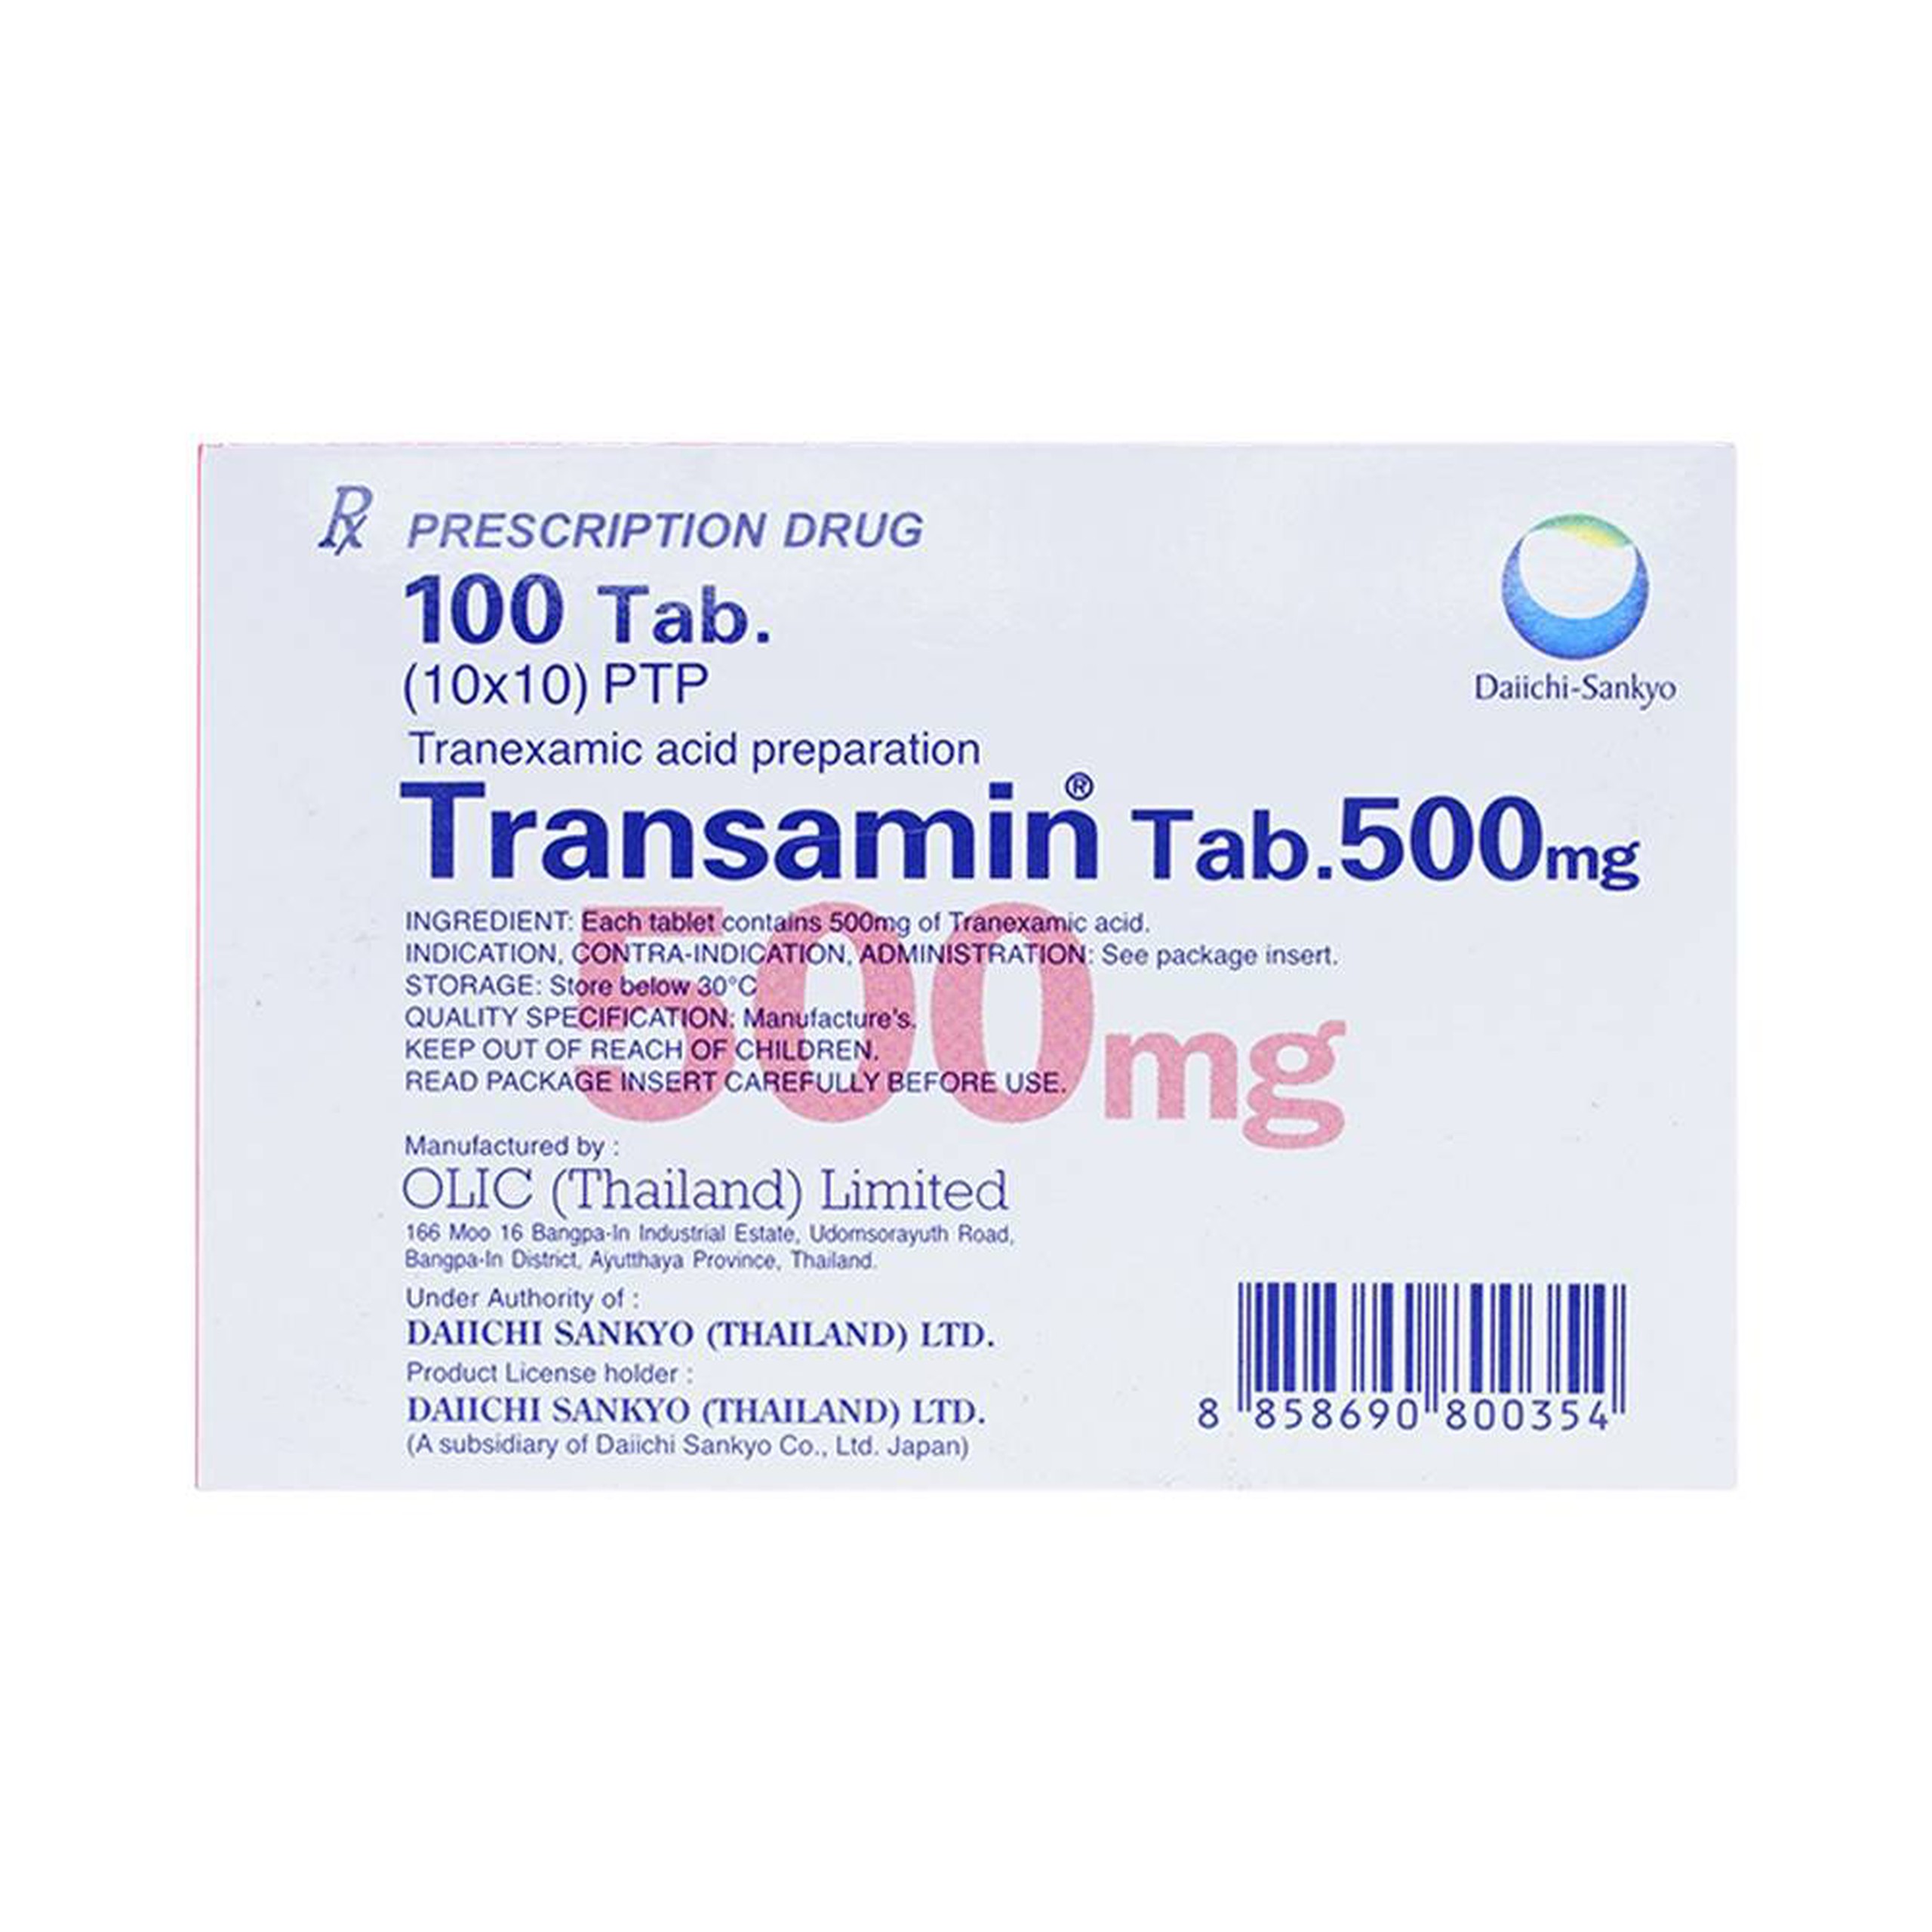 Thuốc Transamin Tab.500mg Daiichi điều trị bệnh bạch huyết, thiếu máu không tái tạo (10 vỉ x 10 viên)